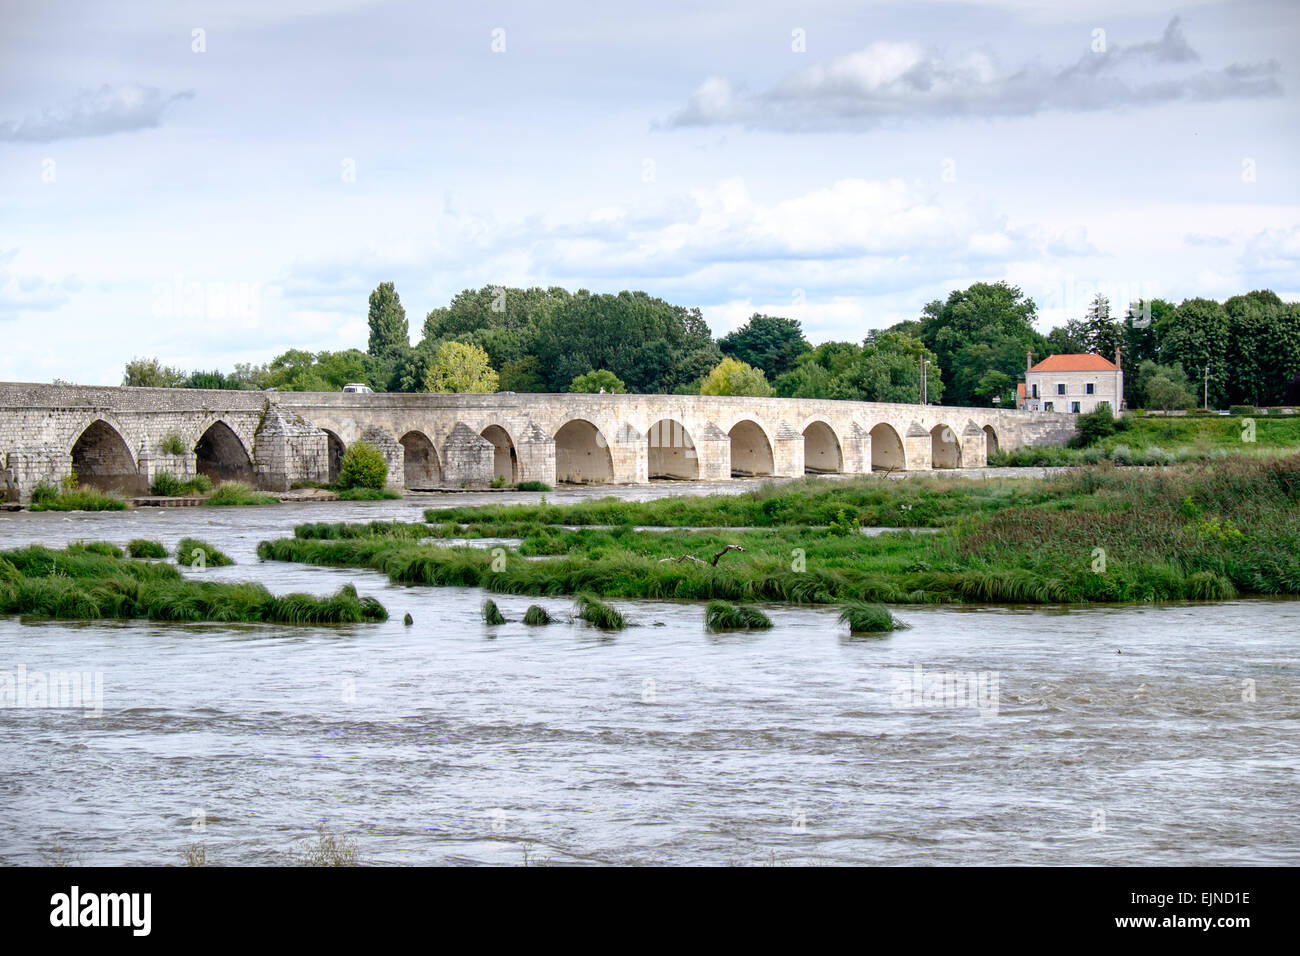 Pont sur la Loire à Beaugency, France Banque D'Images